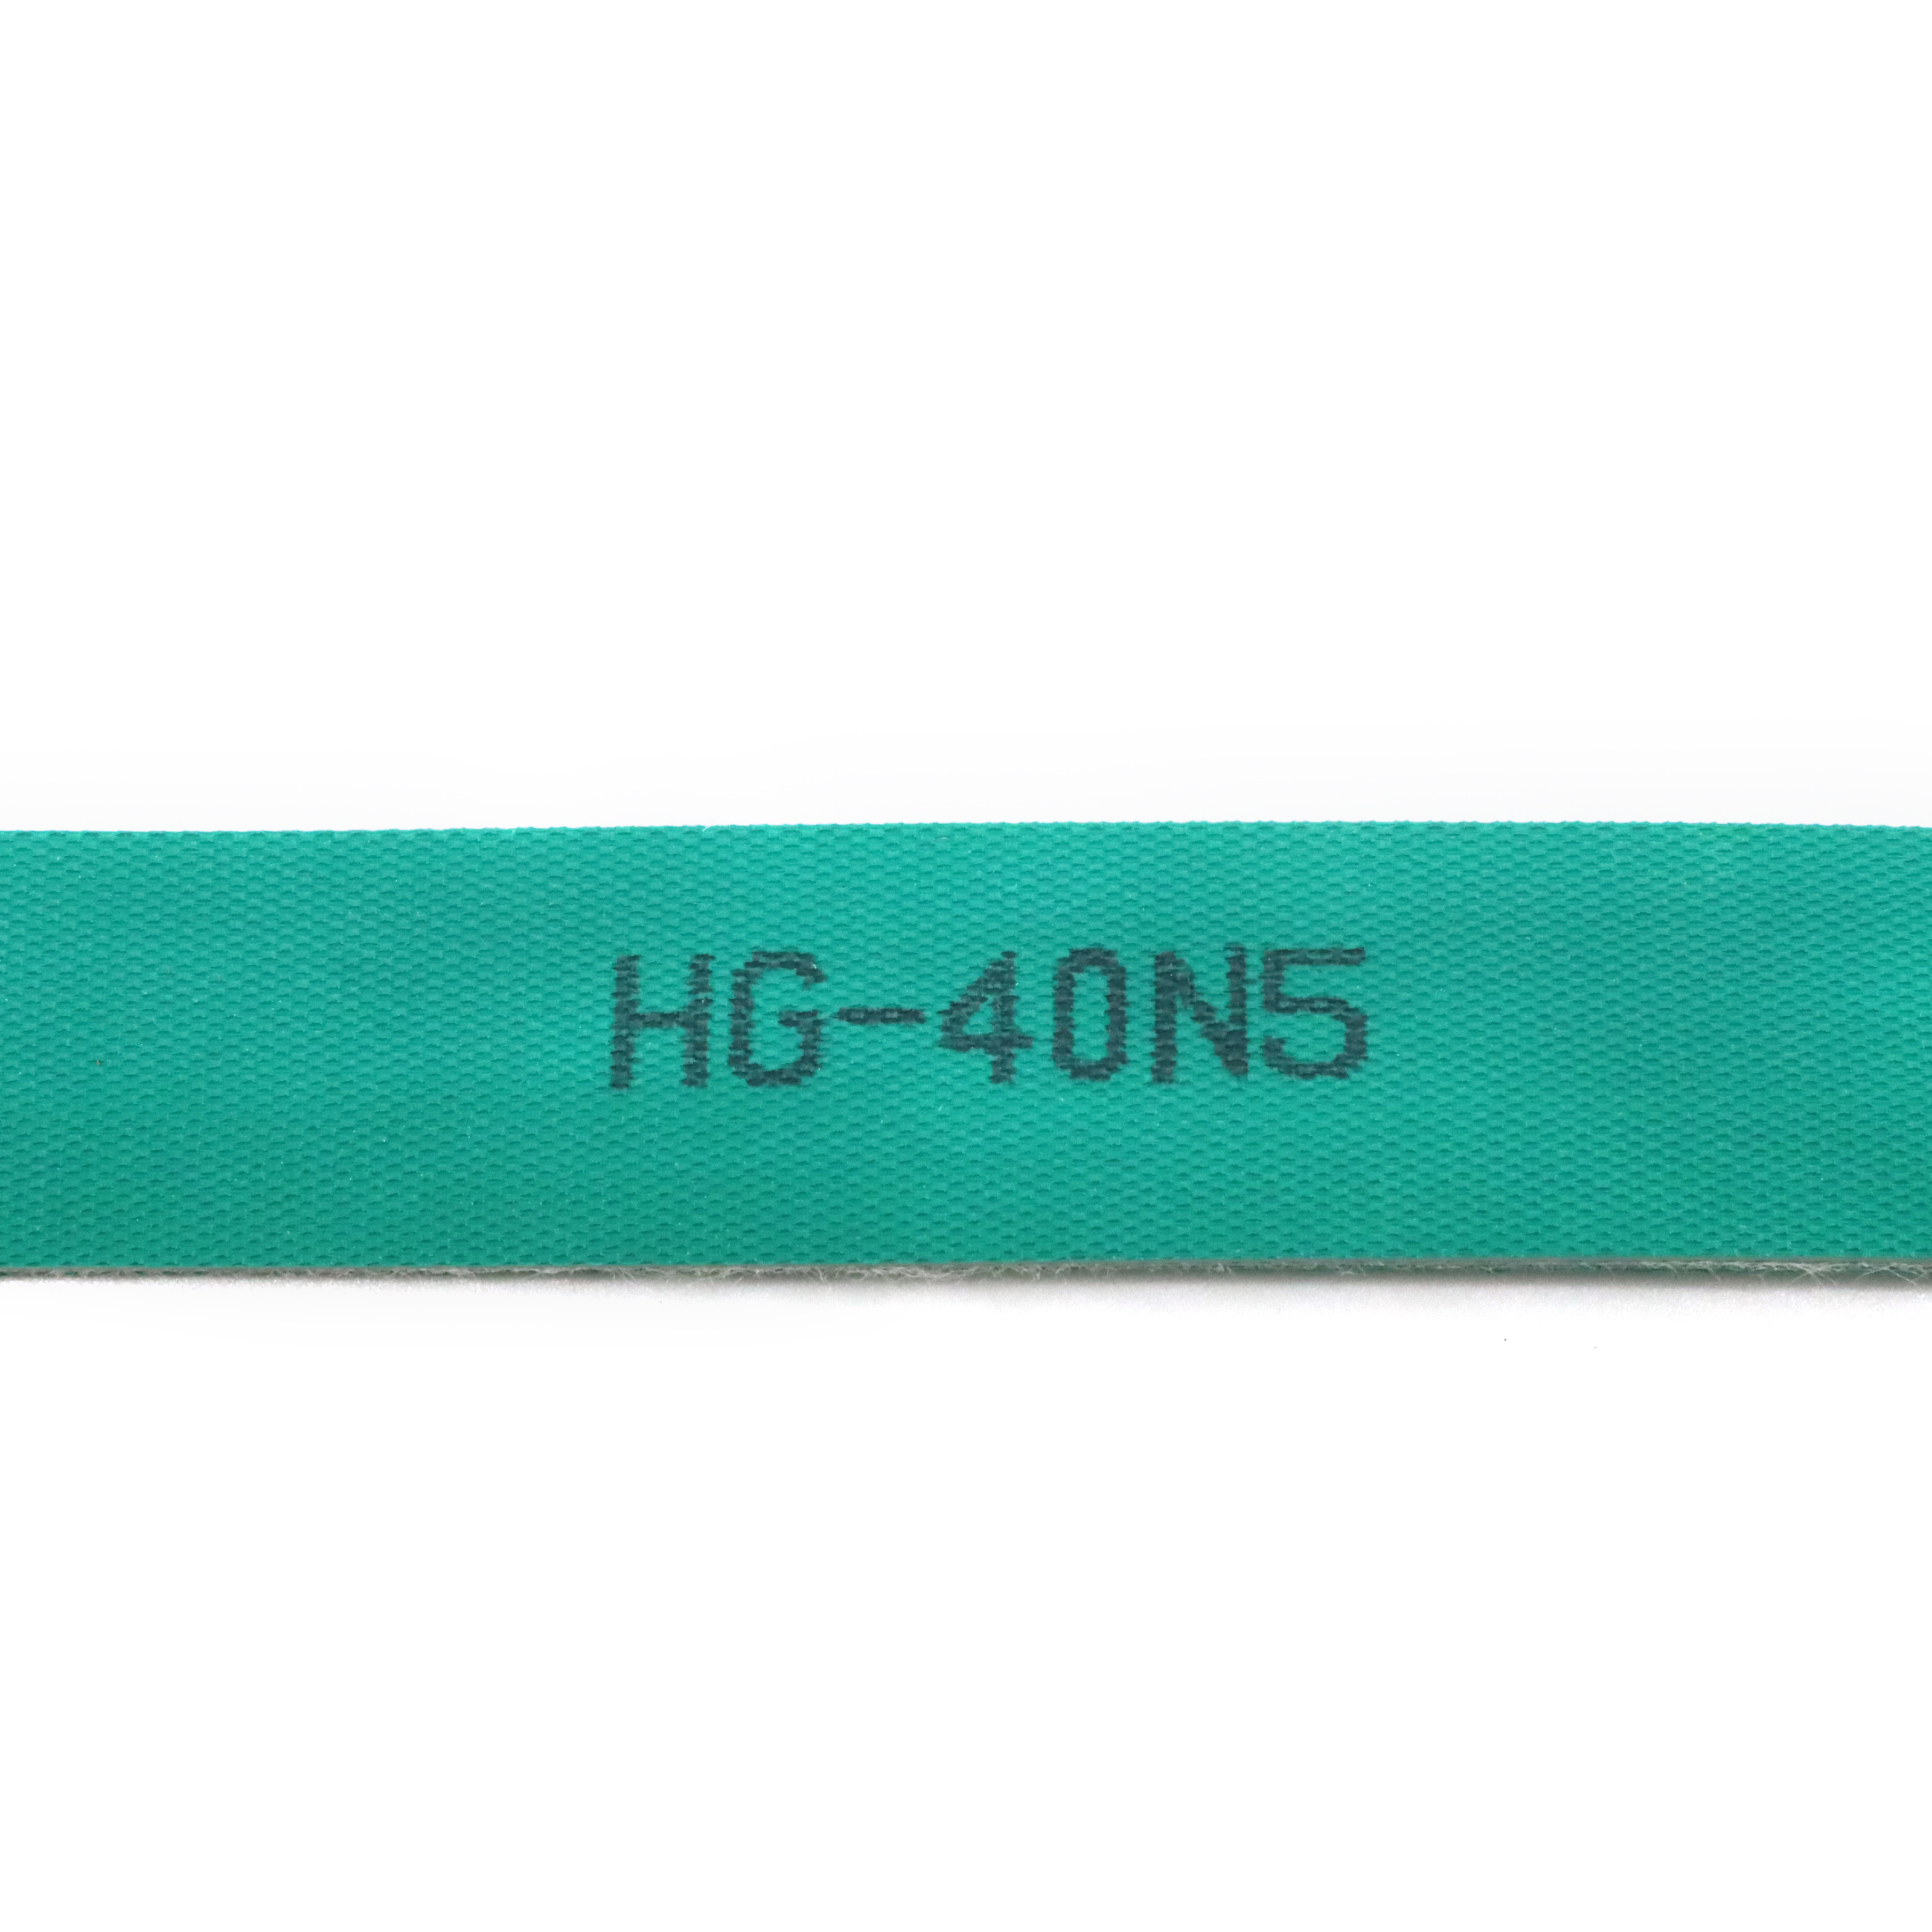 HG-40N5